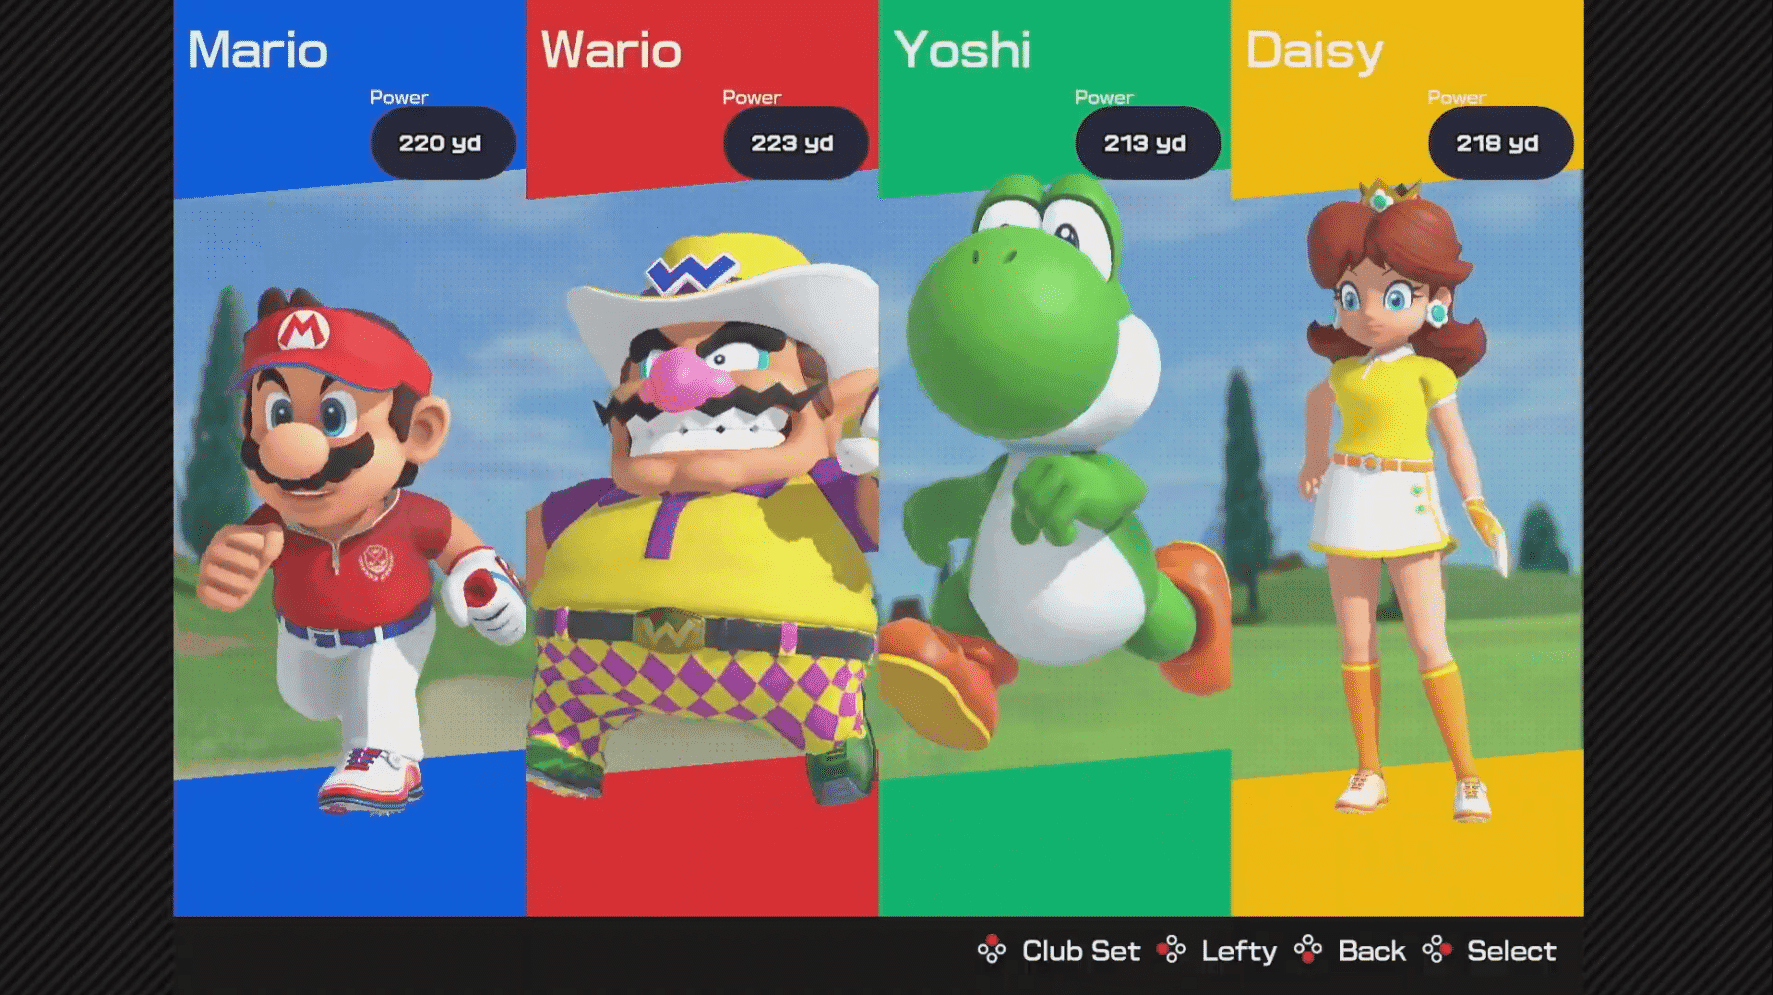 Los 11 personajes jugables y 3 campos confirmados hasta ahora en Mario Golf: Super Rush, junto a un análisis en vídeo del primer tráiler